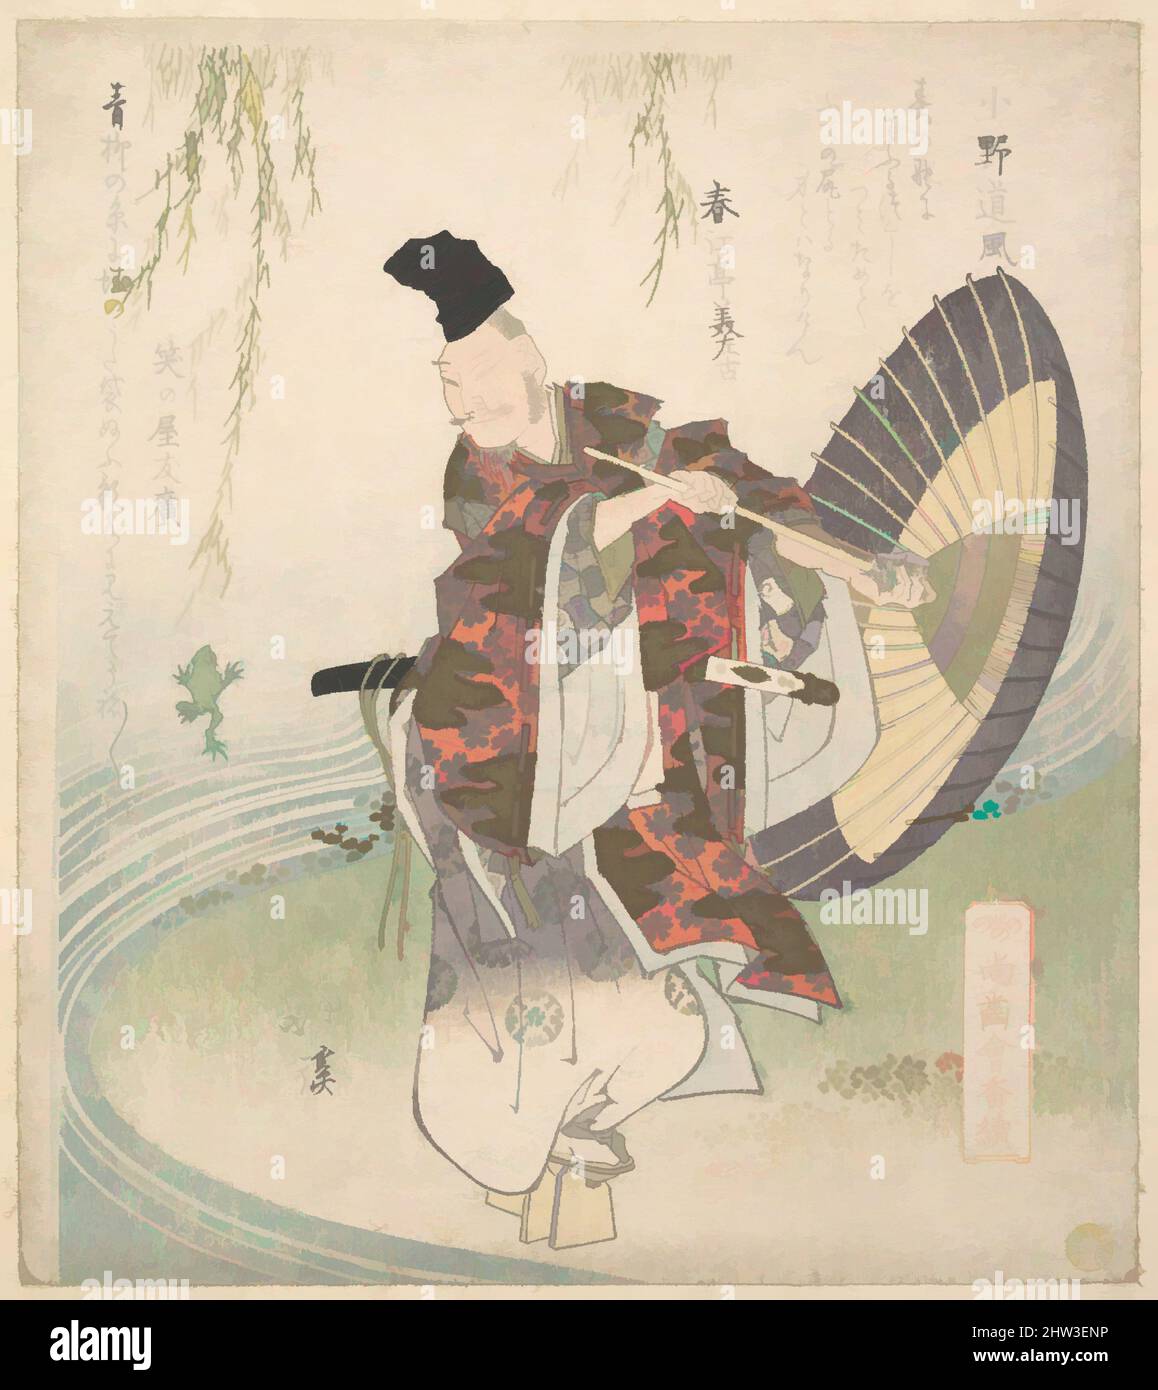 Arte ispirata da Ono no tofu in piedi sulla riva di un torrente e guardare una rana balzare per catturare una filiale di Willow, Edo periodo (1615–1868), ca. 1825, Giappone, stampa a blocchi di legno policromi (surimono); inchiostro e colore su carta, 8 5/8 x 7 5/8 pollici (21,9 x 19,4 cm), stampe, Totoya Hokkei (Giapponese, opere classiche modernizzate da Artotop con un tuffo di modernità. Forme, colore e valore, impatto visivo accattivante sulle emozioni artistiche attraverso la libertà delle opere d'arte in modo contemporaneo. Un messaggio senza tempo che persegue una nuova direzione selvaggiamente creativa. Artisti che si rivolgono al supporto digitale e creano l'NFT Artotop Foto Stock